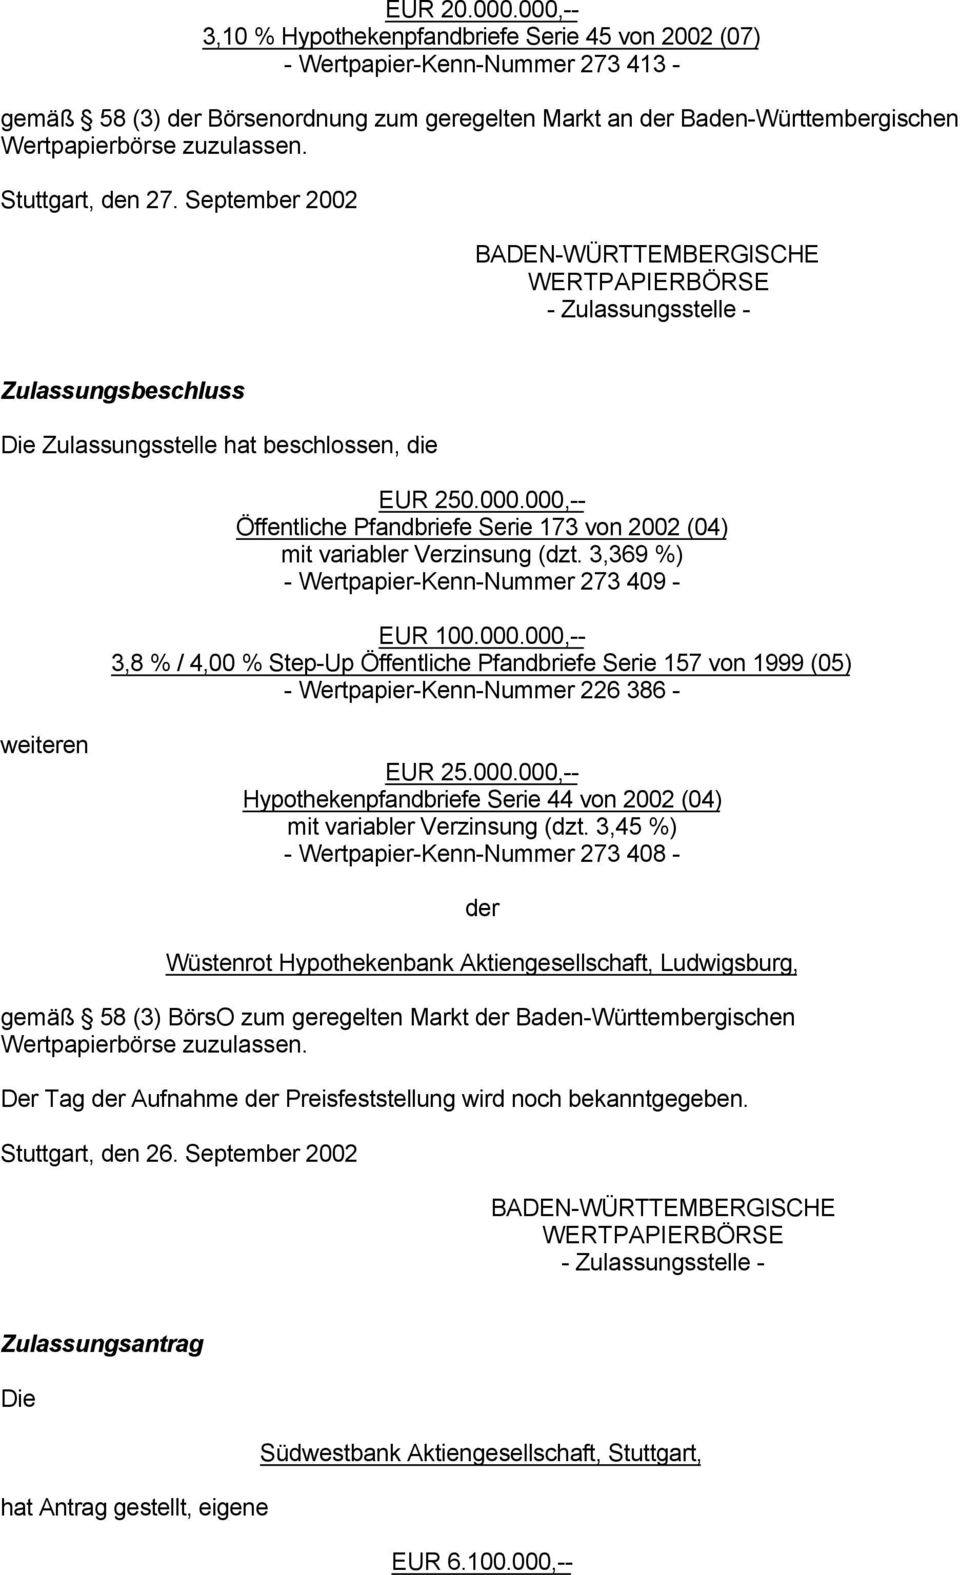 Stuttgart, den 27. September 2002 BADEN-WÜRTTEMBERGISCHE WERTPAPIERBÖRSE - Zulassungsstelle - Zulassungsbeschluss Die Zulassungsstelle hat beschlossen, die EUR 250.000.